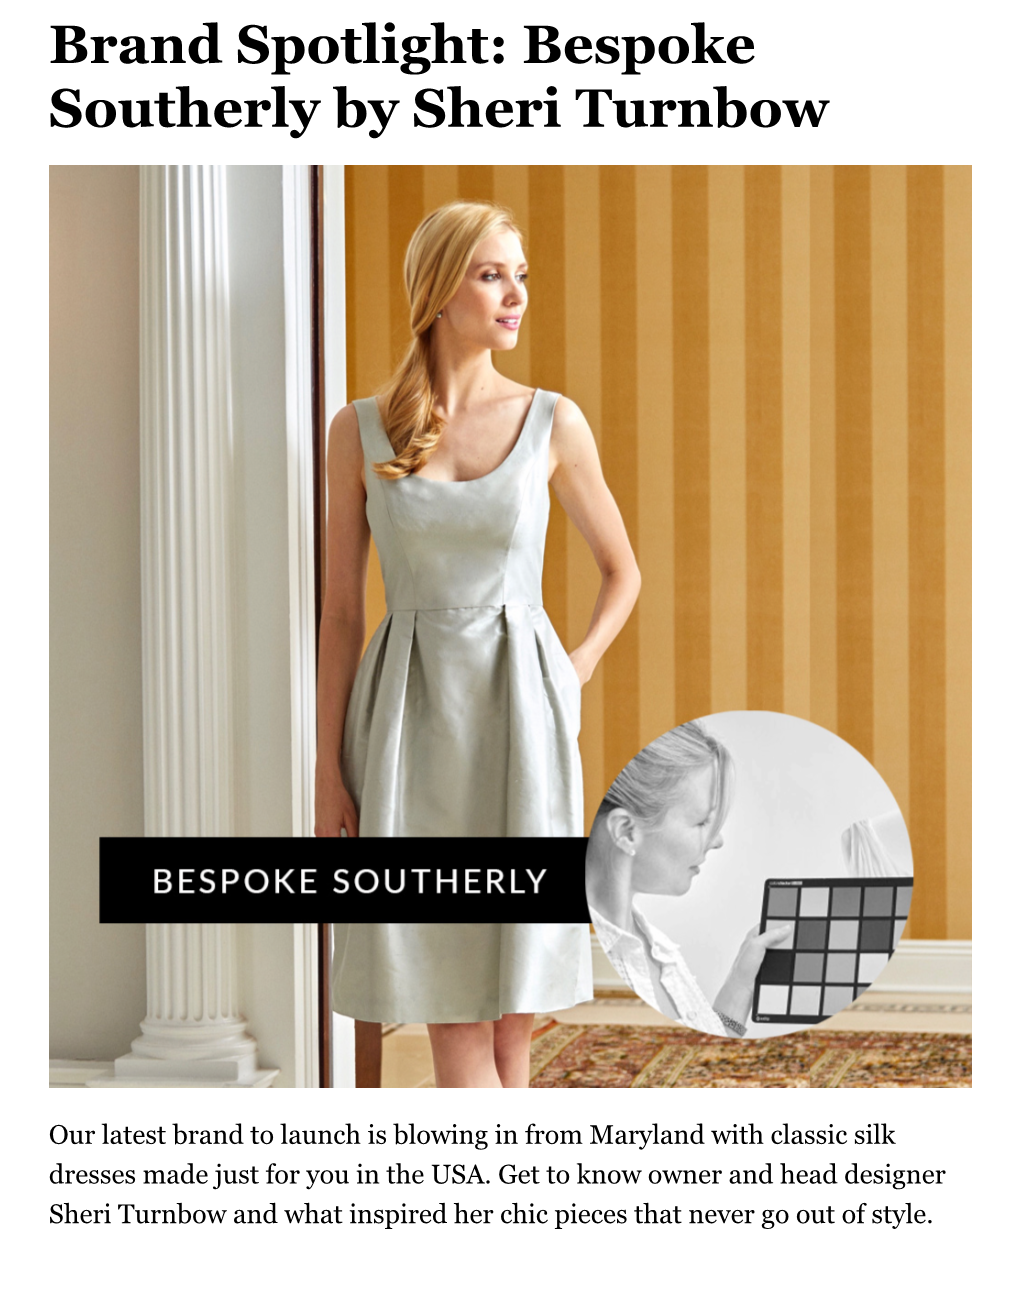 Brand Spotlight: Bespoke Southerly by Sheri Turnbow